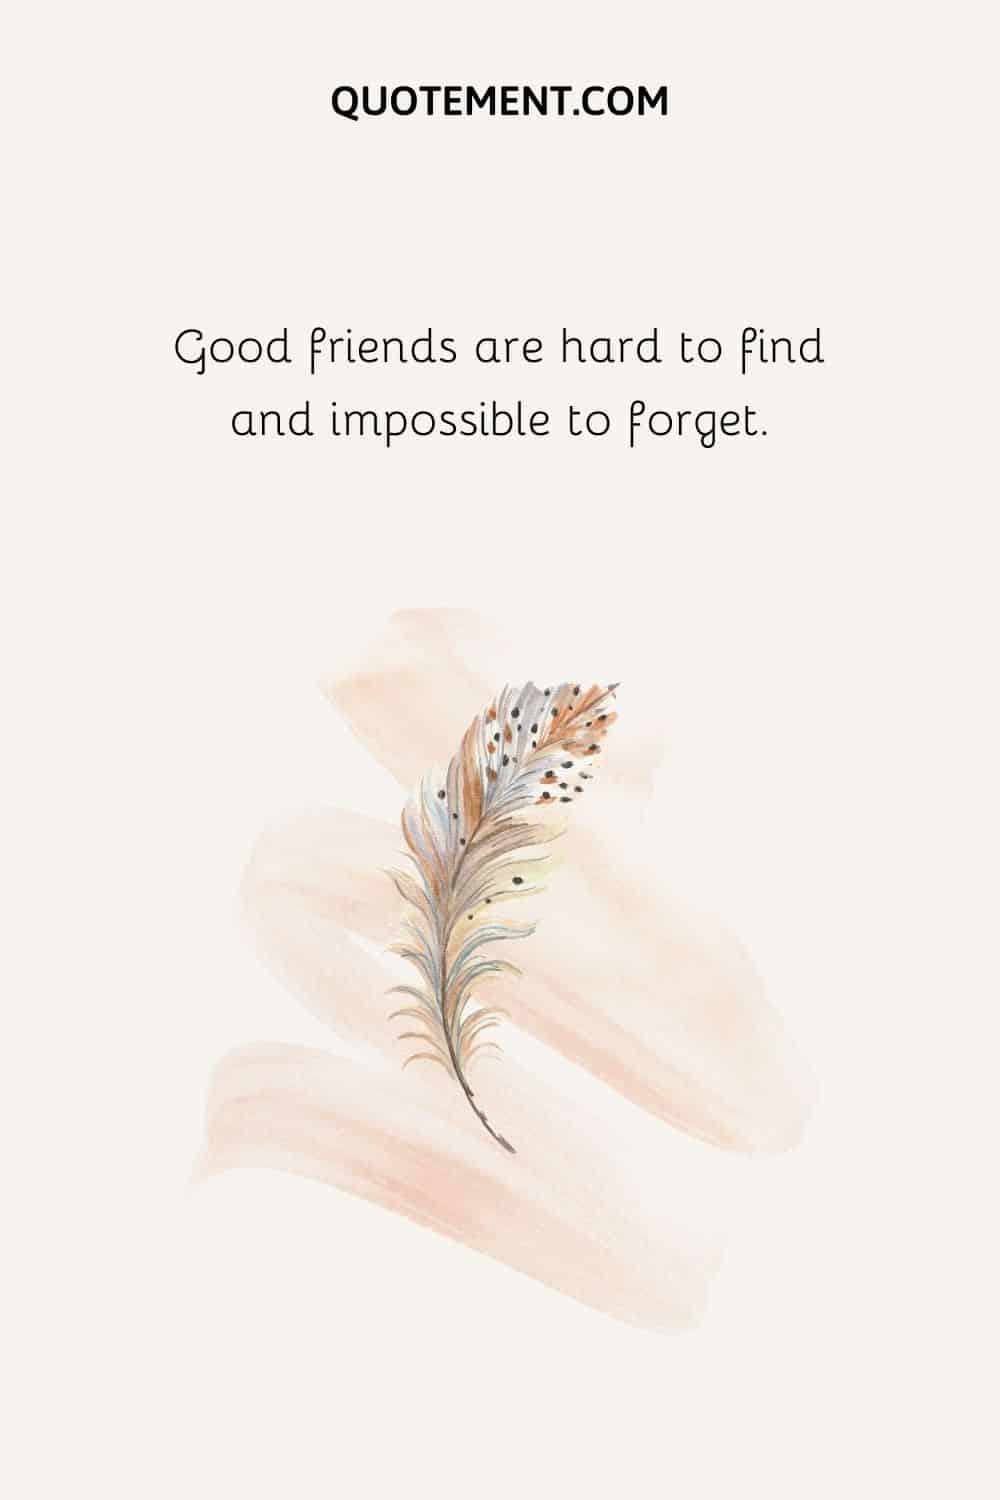 Los buenos amigos son difíciles de encontrar e imposibles de olvidar.